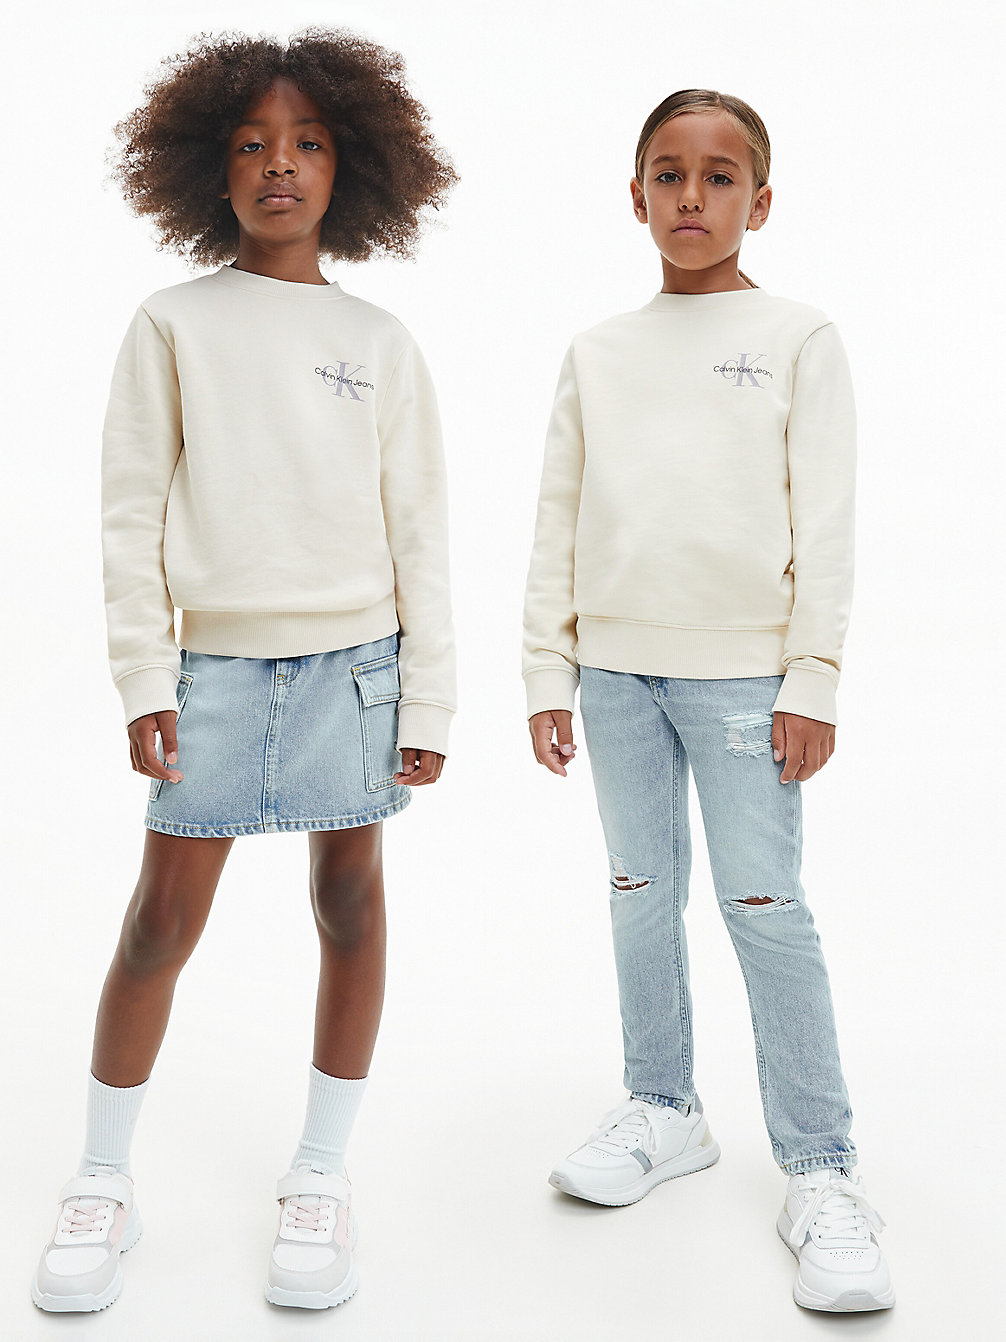 MUSLIN > Unisex Sweatshirt > undefined kids unisex - Calvin Klein